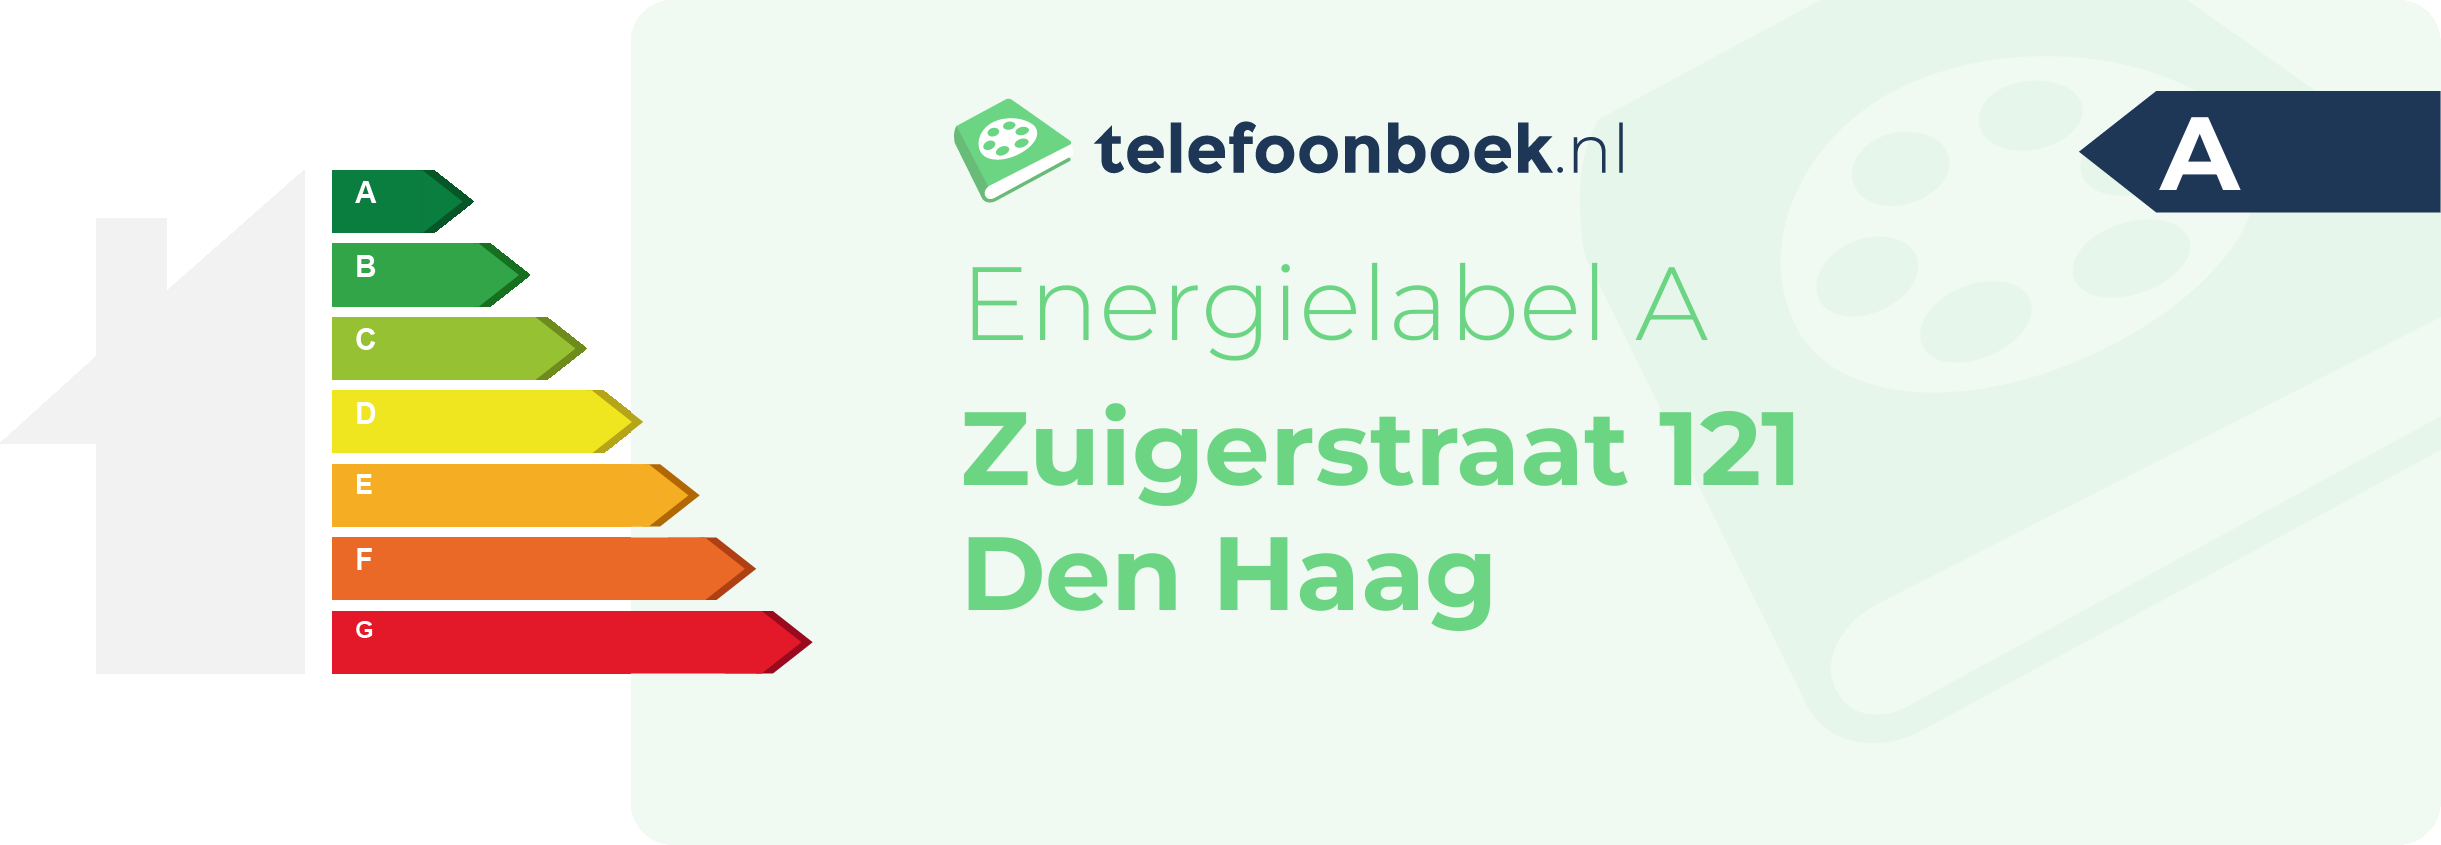 Energielabel Zuigerstraat 121 Den Haag